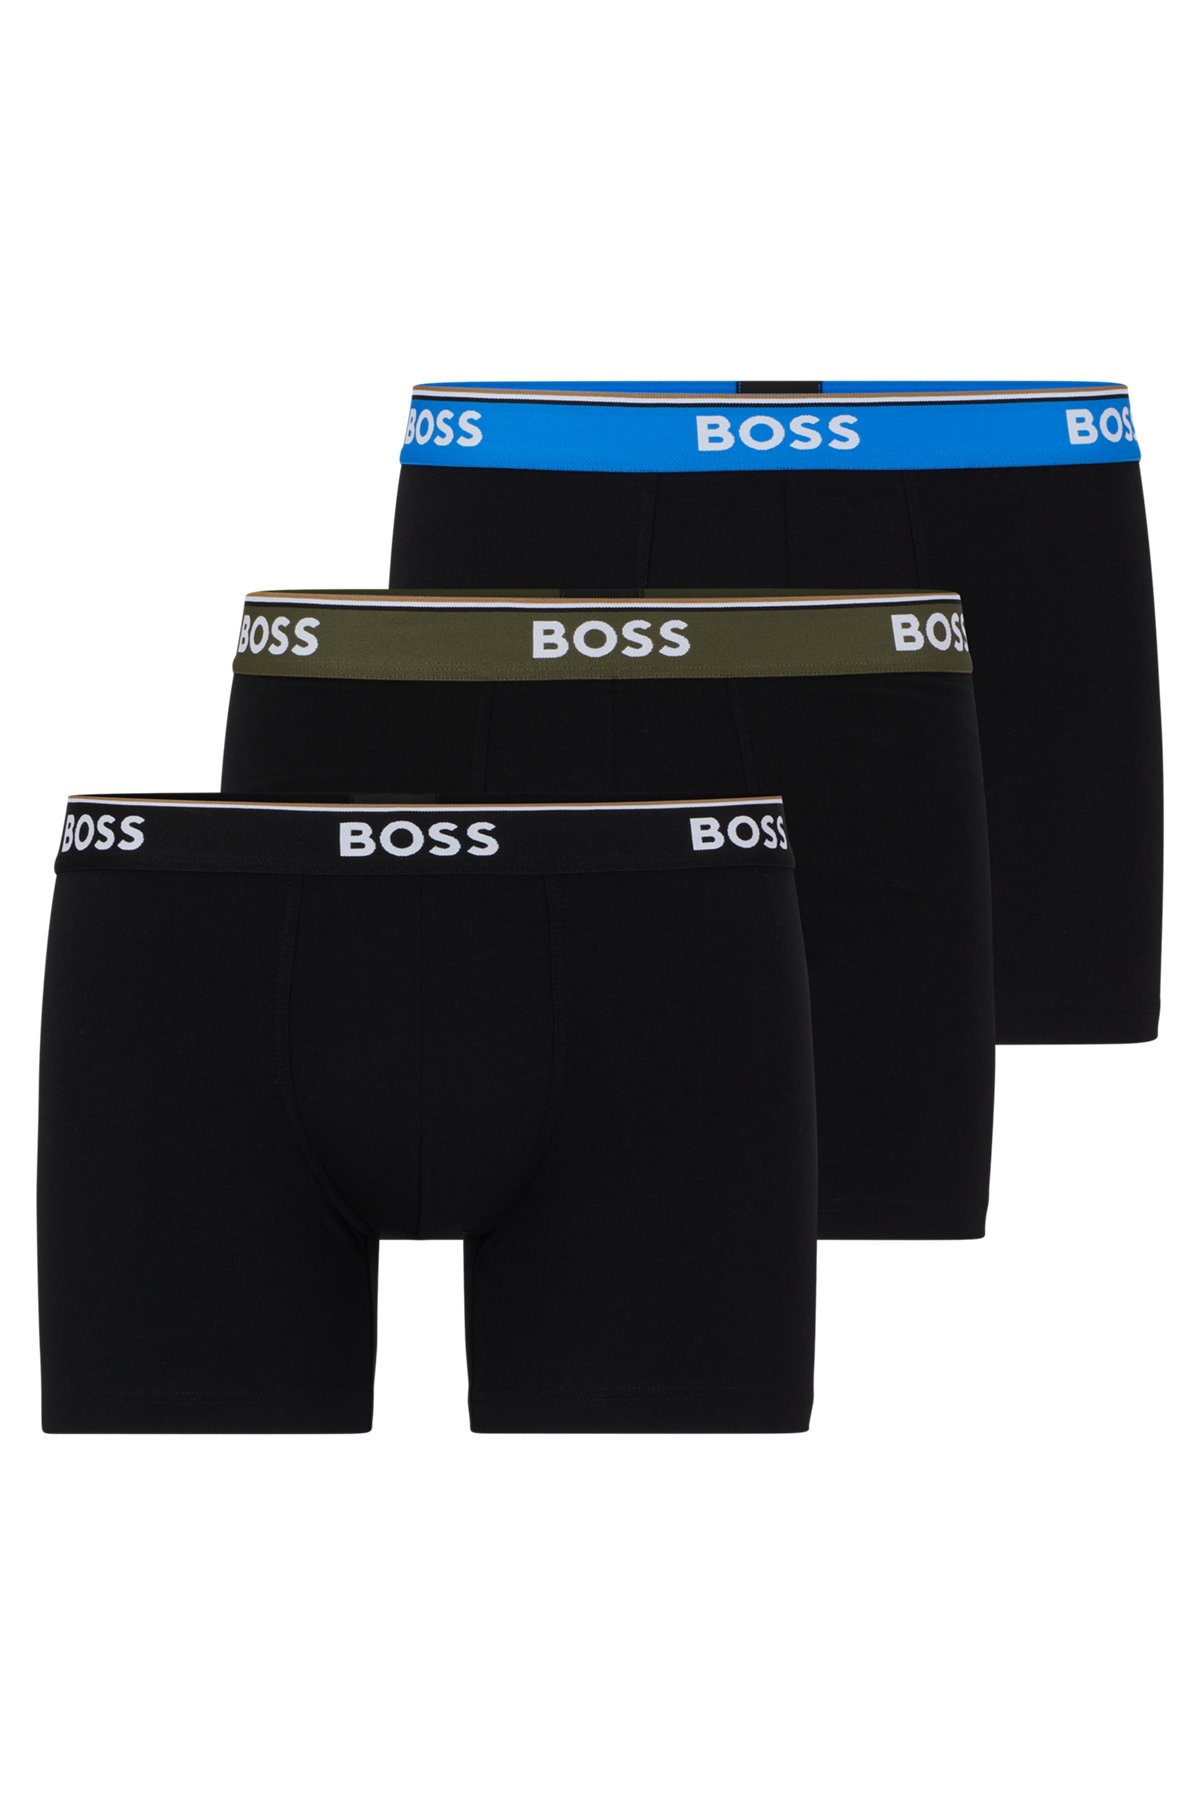 BOSS - Paquete de tres calzoncillos bóxer de algodón elástico con logos